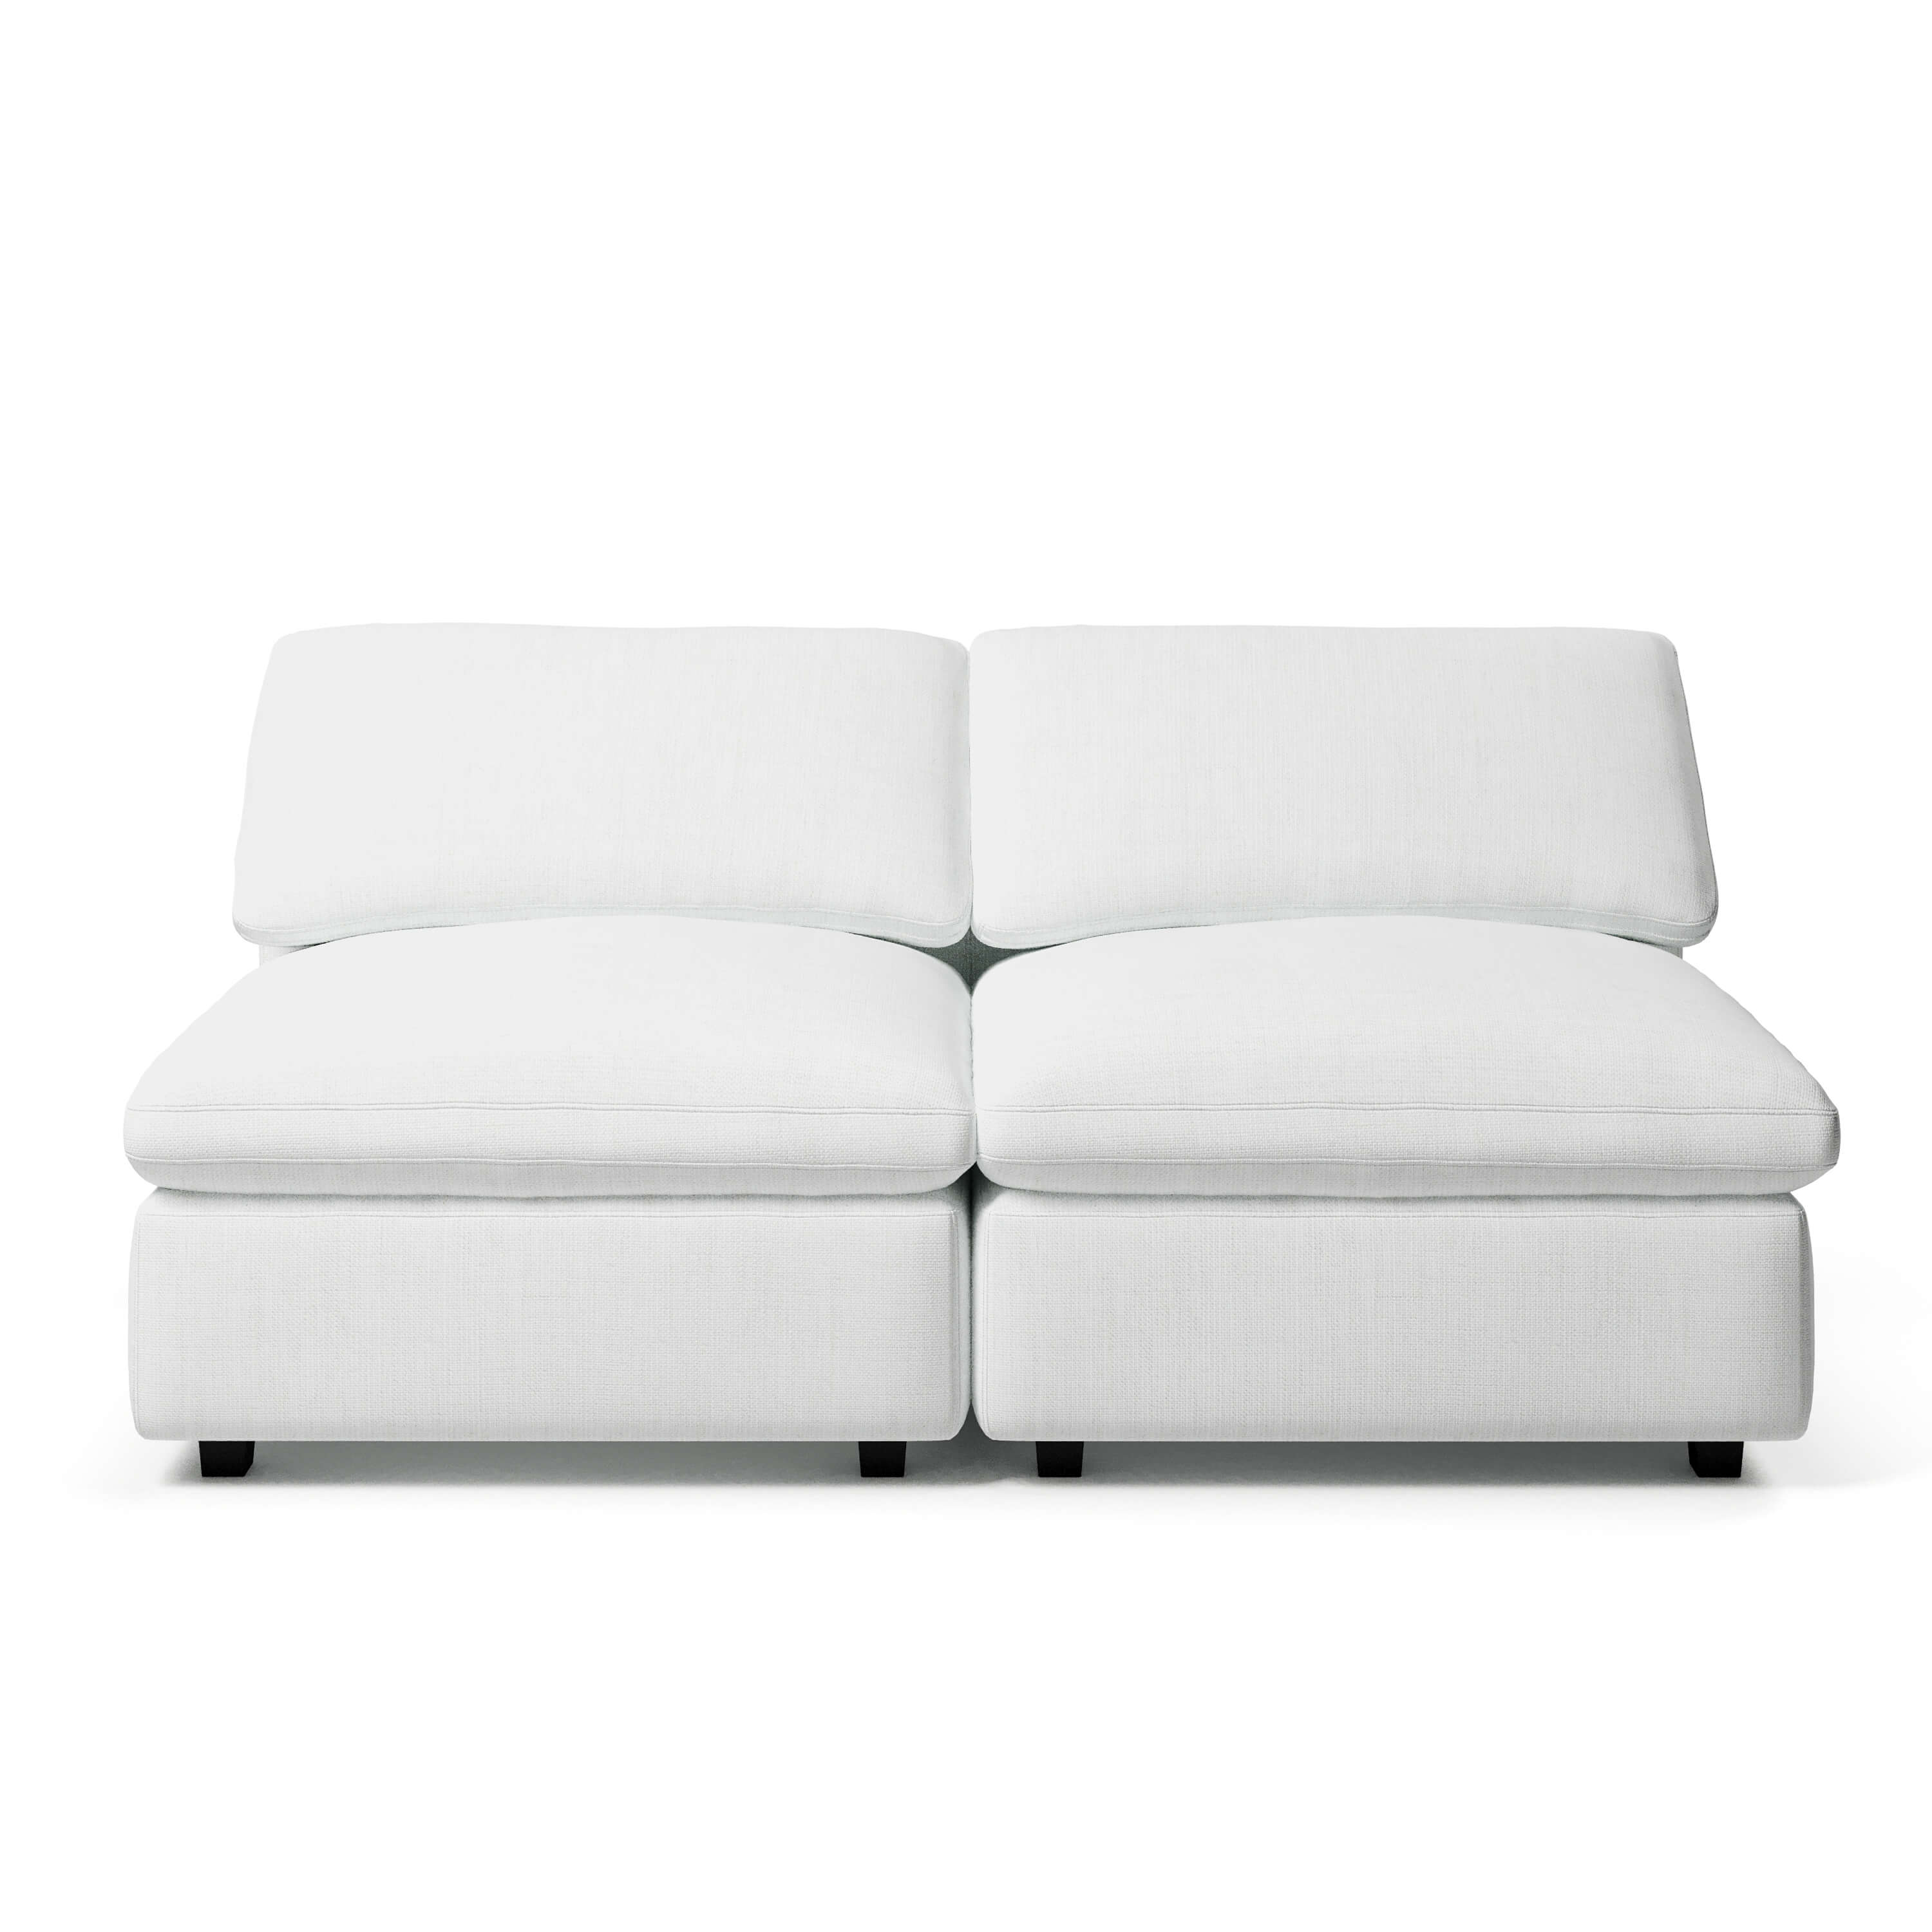 Comfy Modular Sofa - 2-Seater Armless